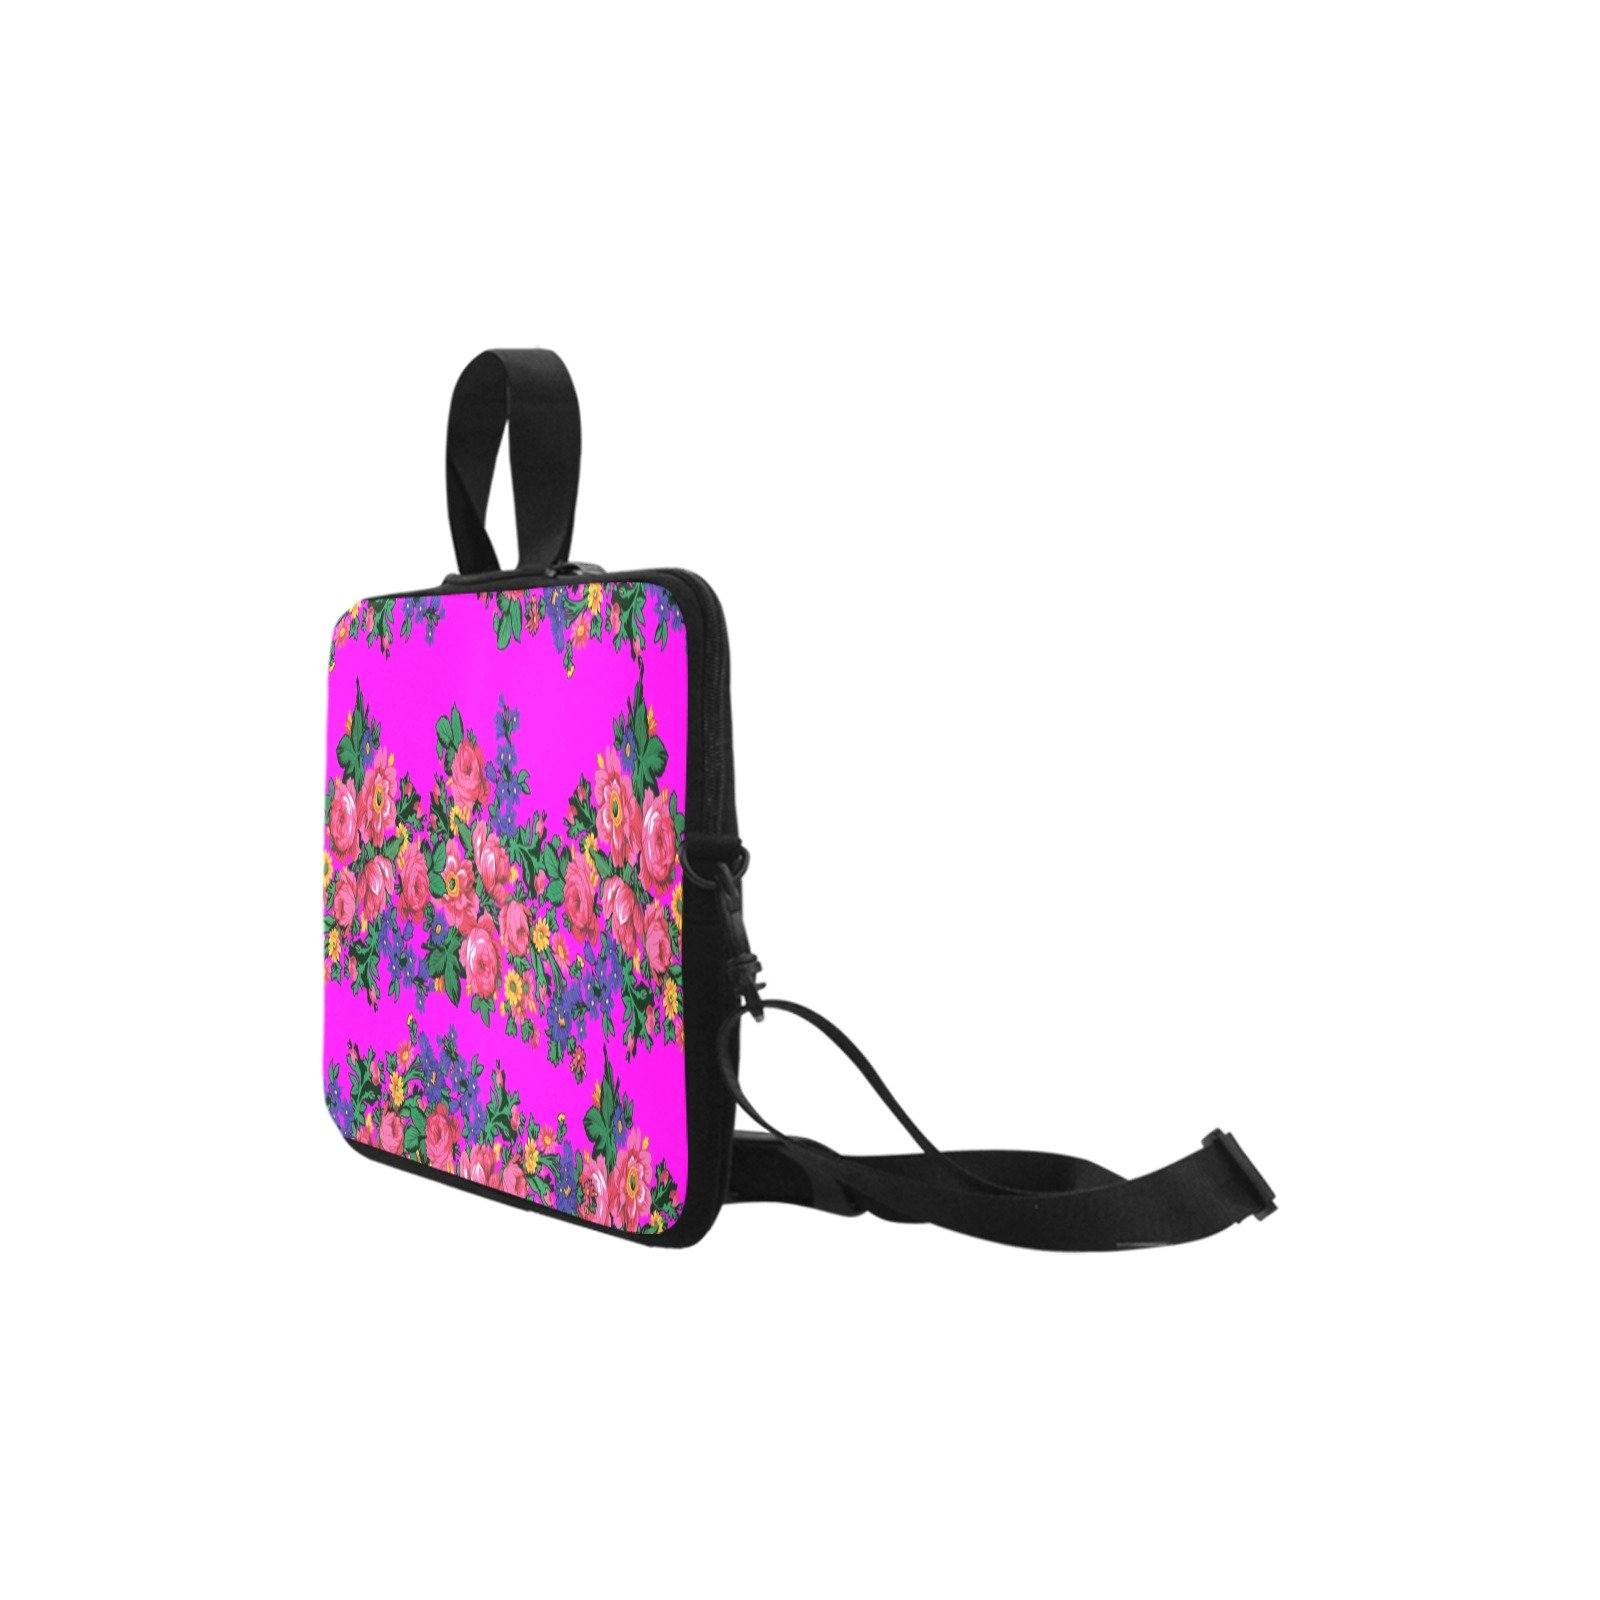 Kokum's Revenge Blush Laptop Handbags 10" bag e-joyer 